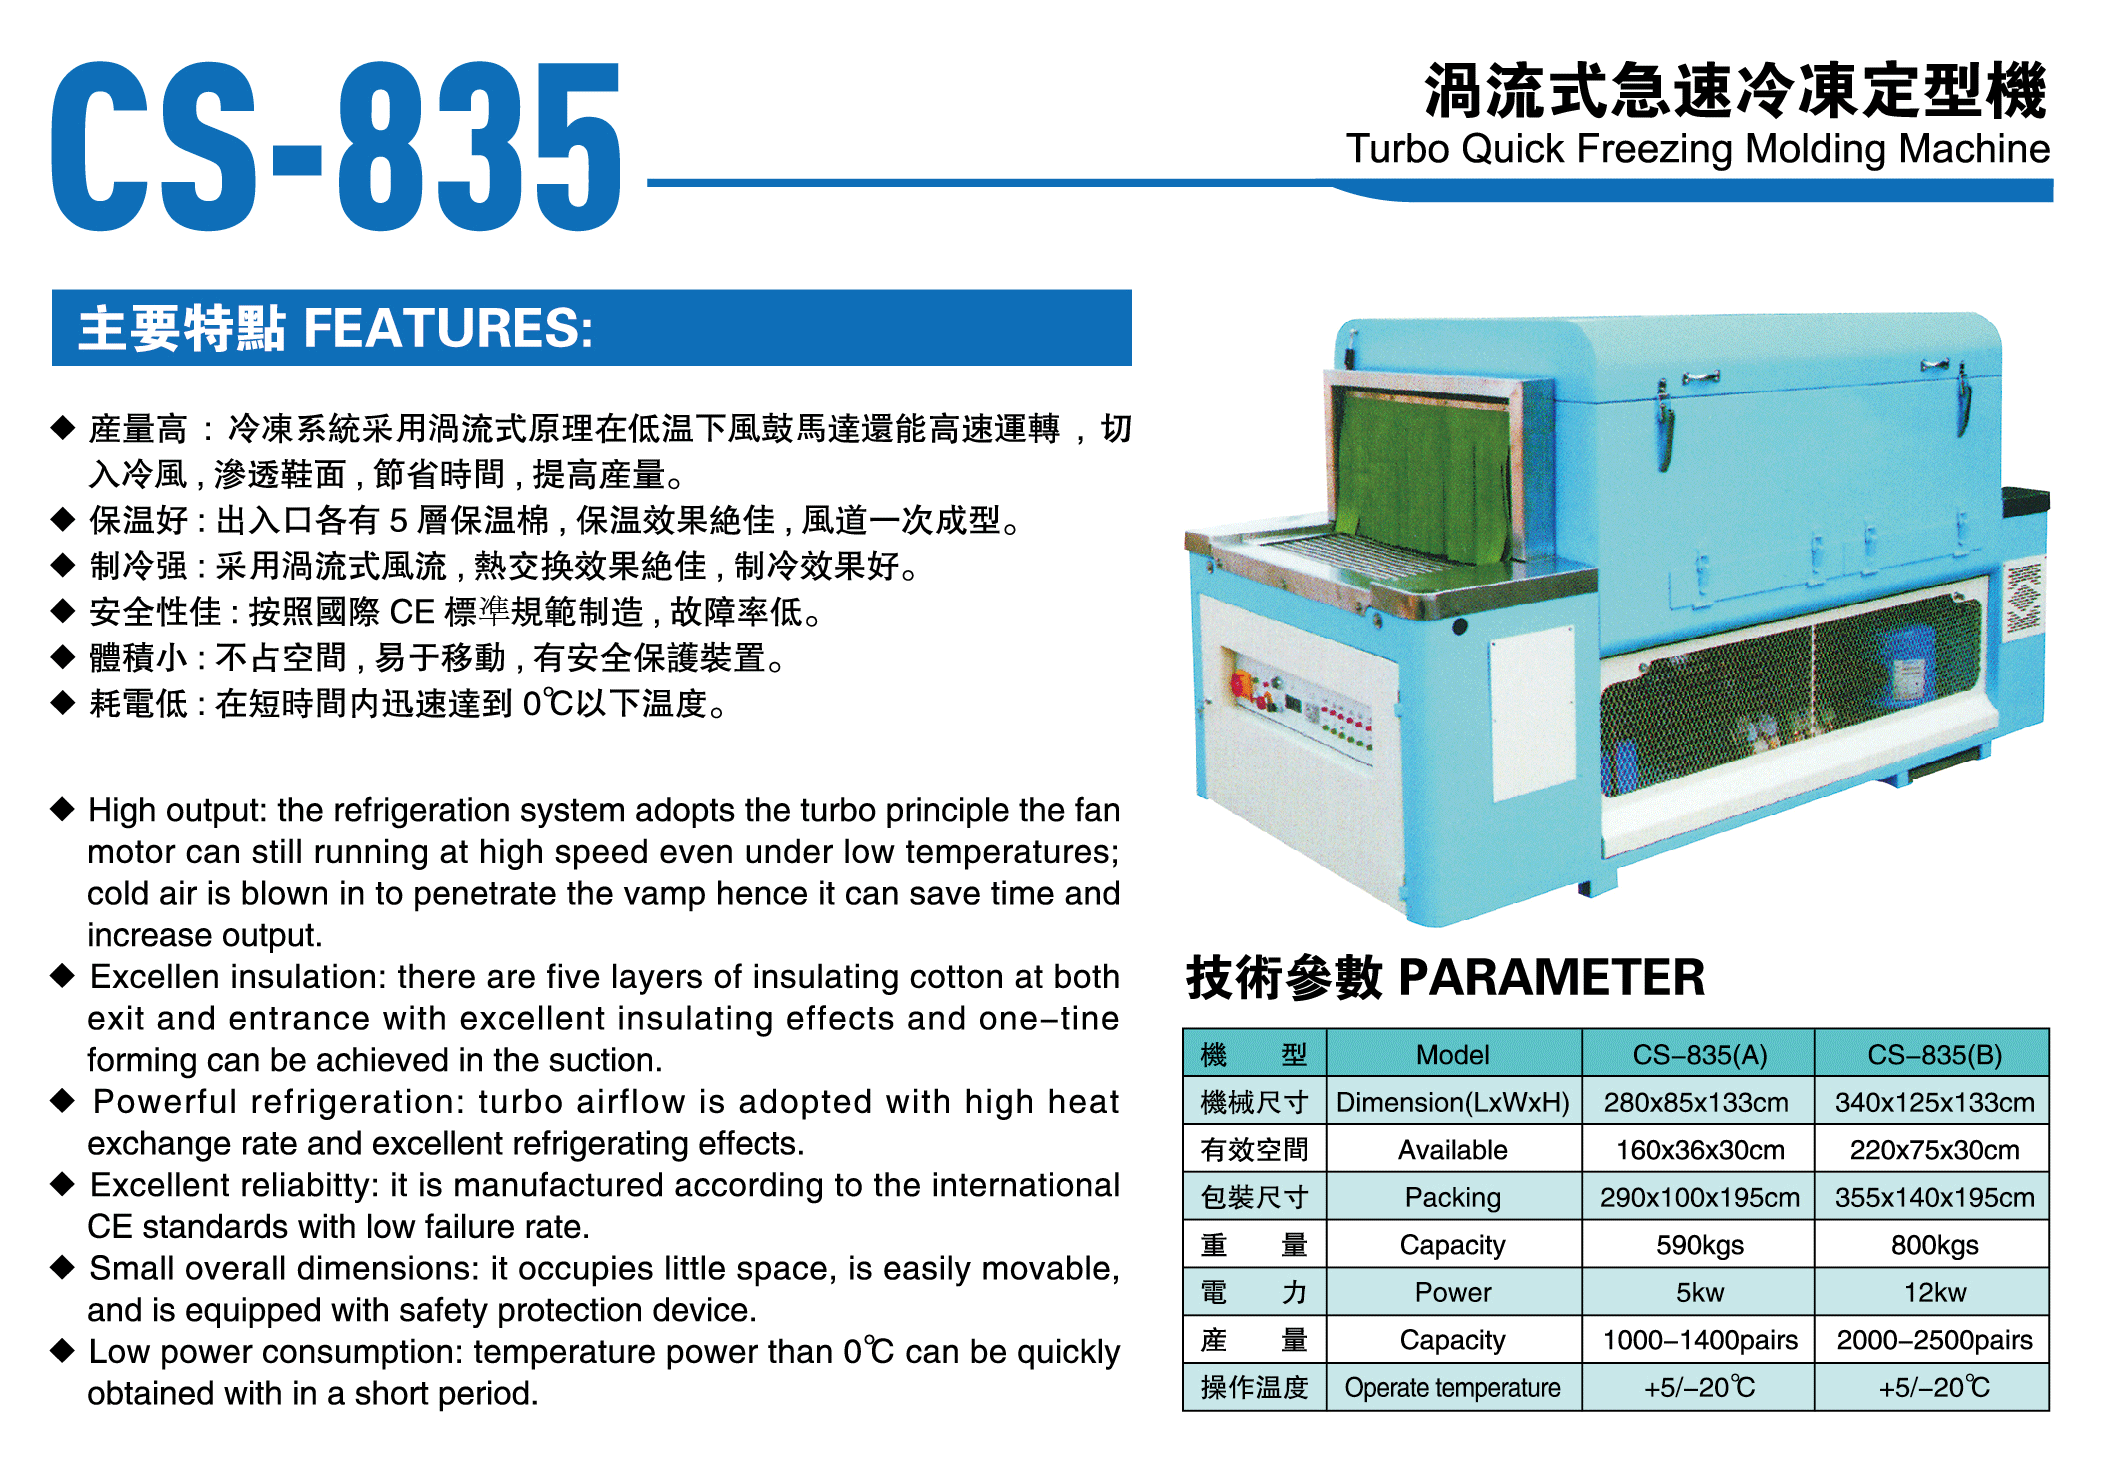 CS-835